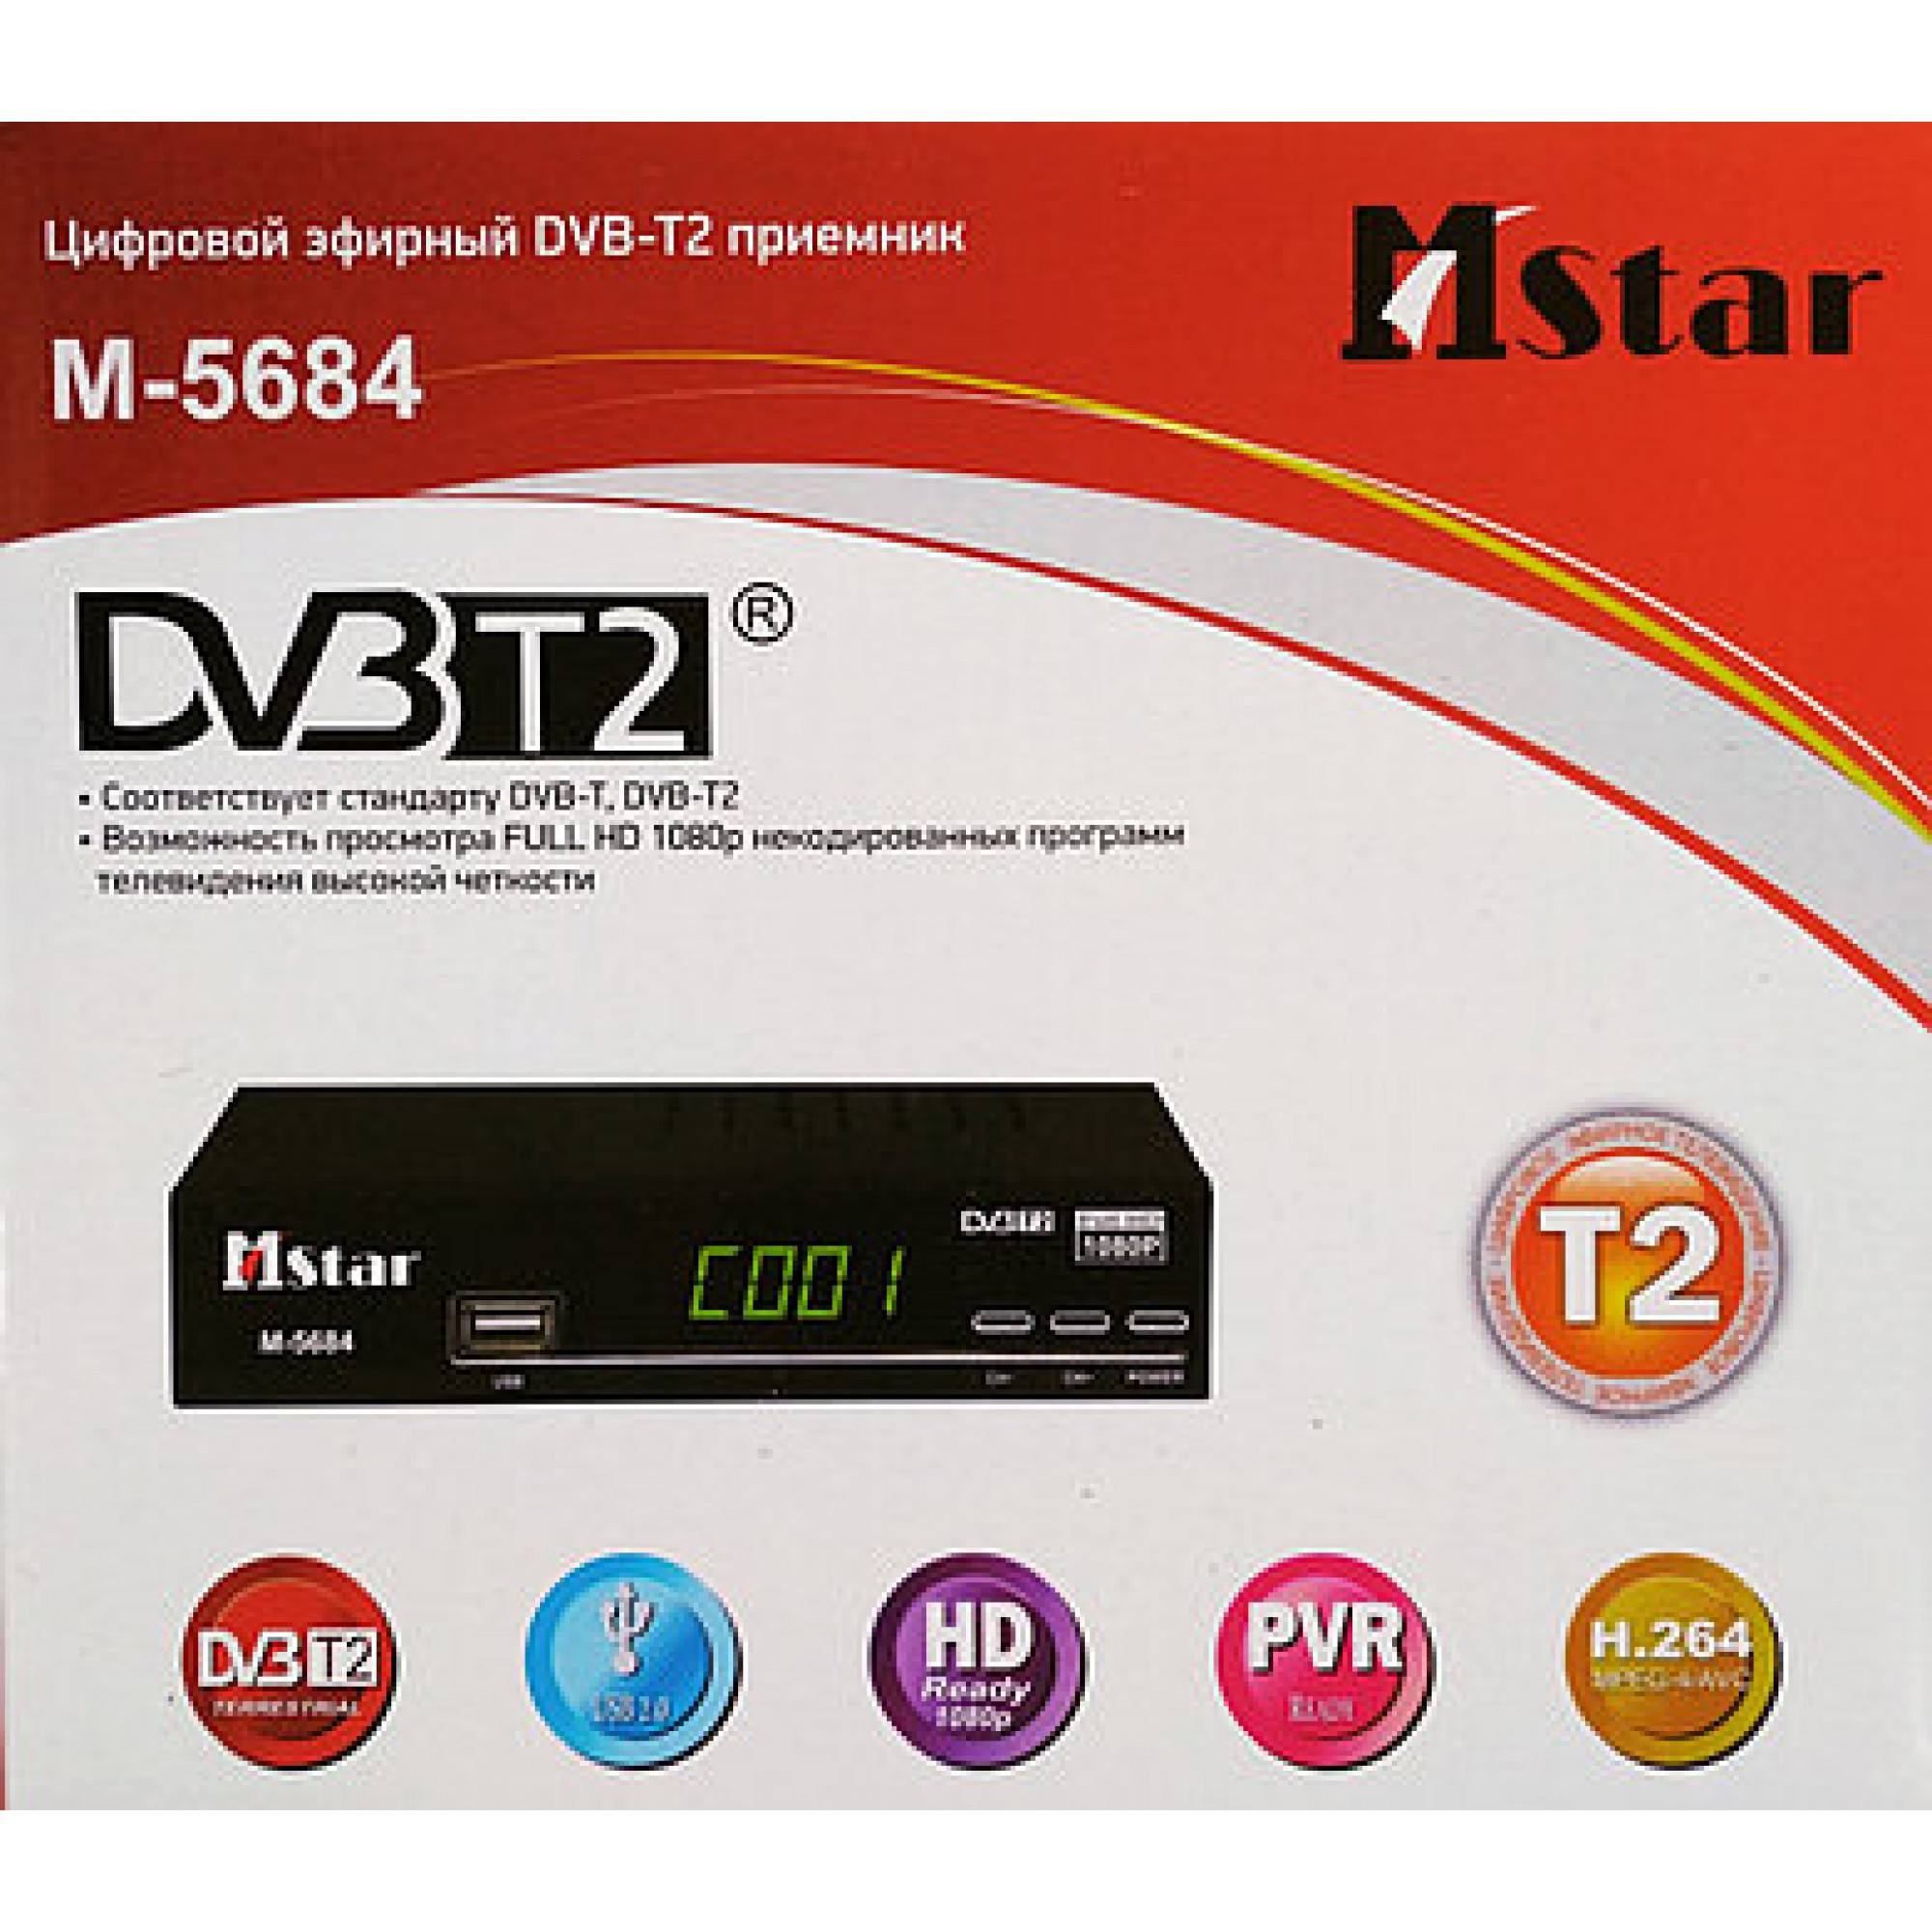 Т2-приставка MStar M-5684